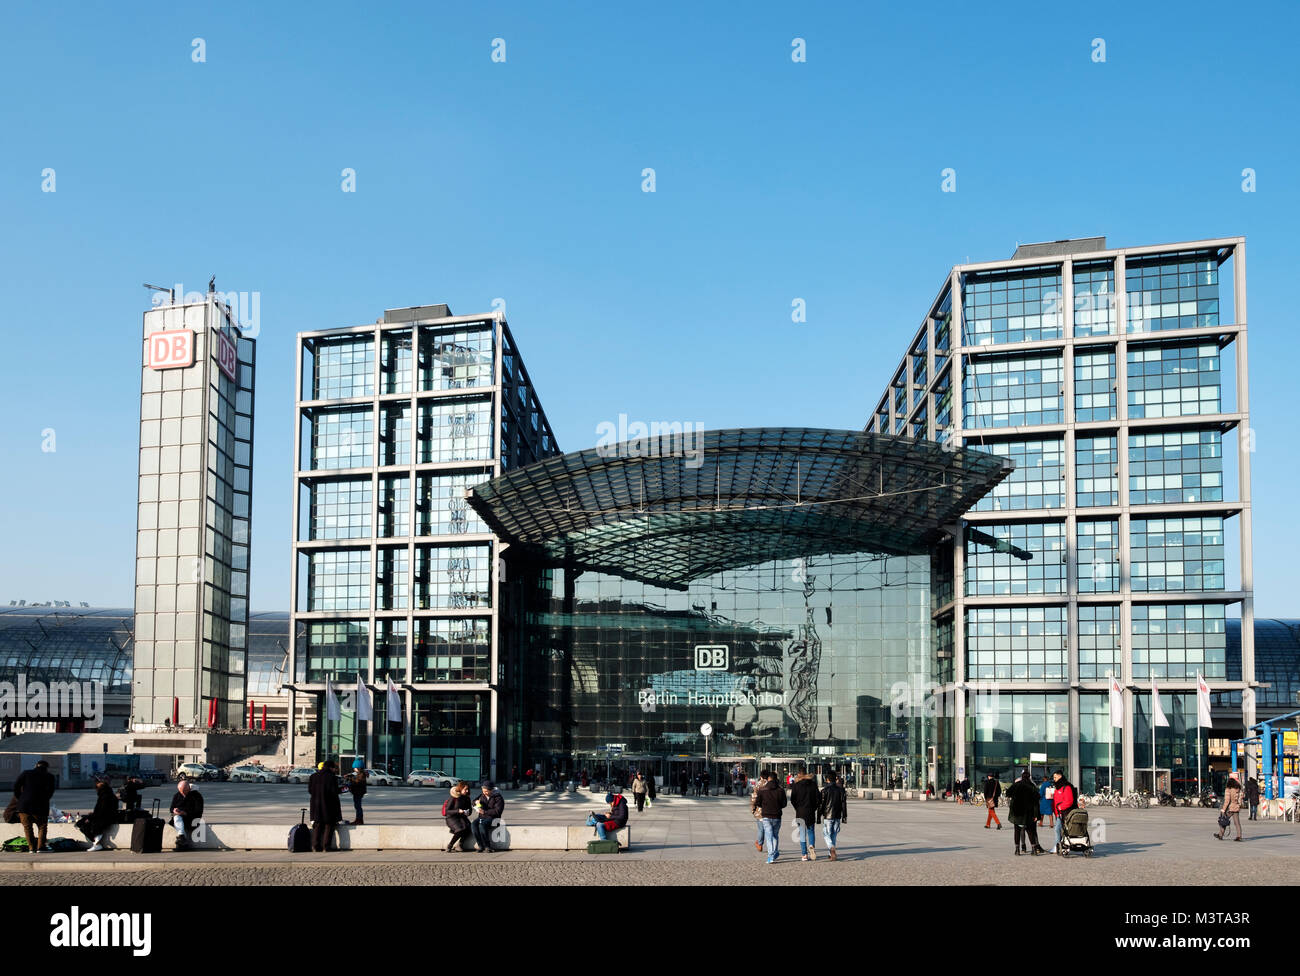 Vue de la gare Hauptbahnhof de Berlin, Allemagne Banque D'Images